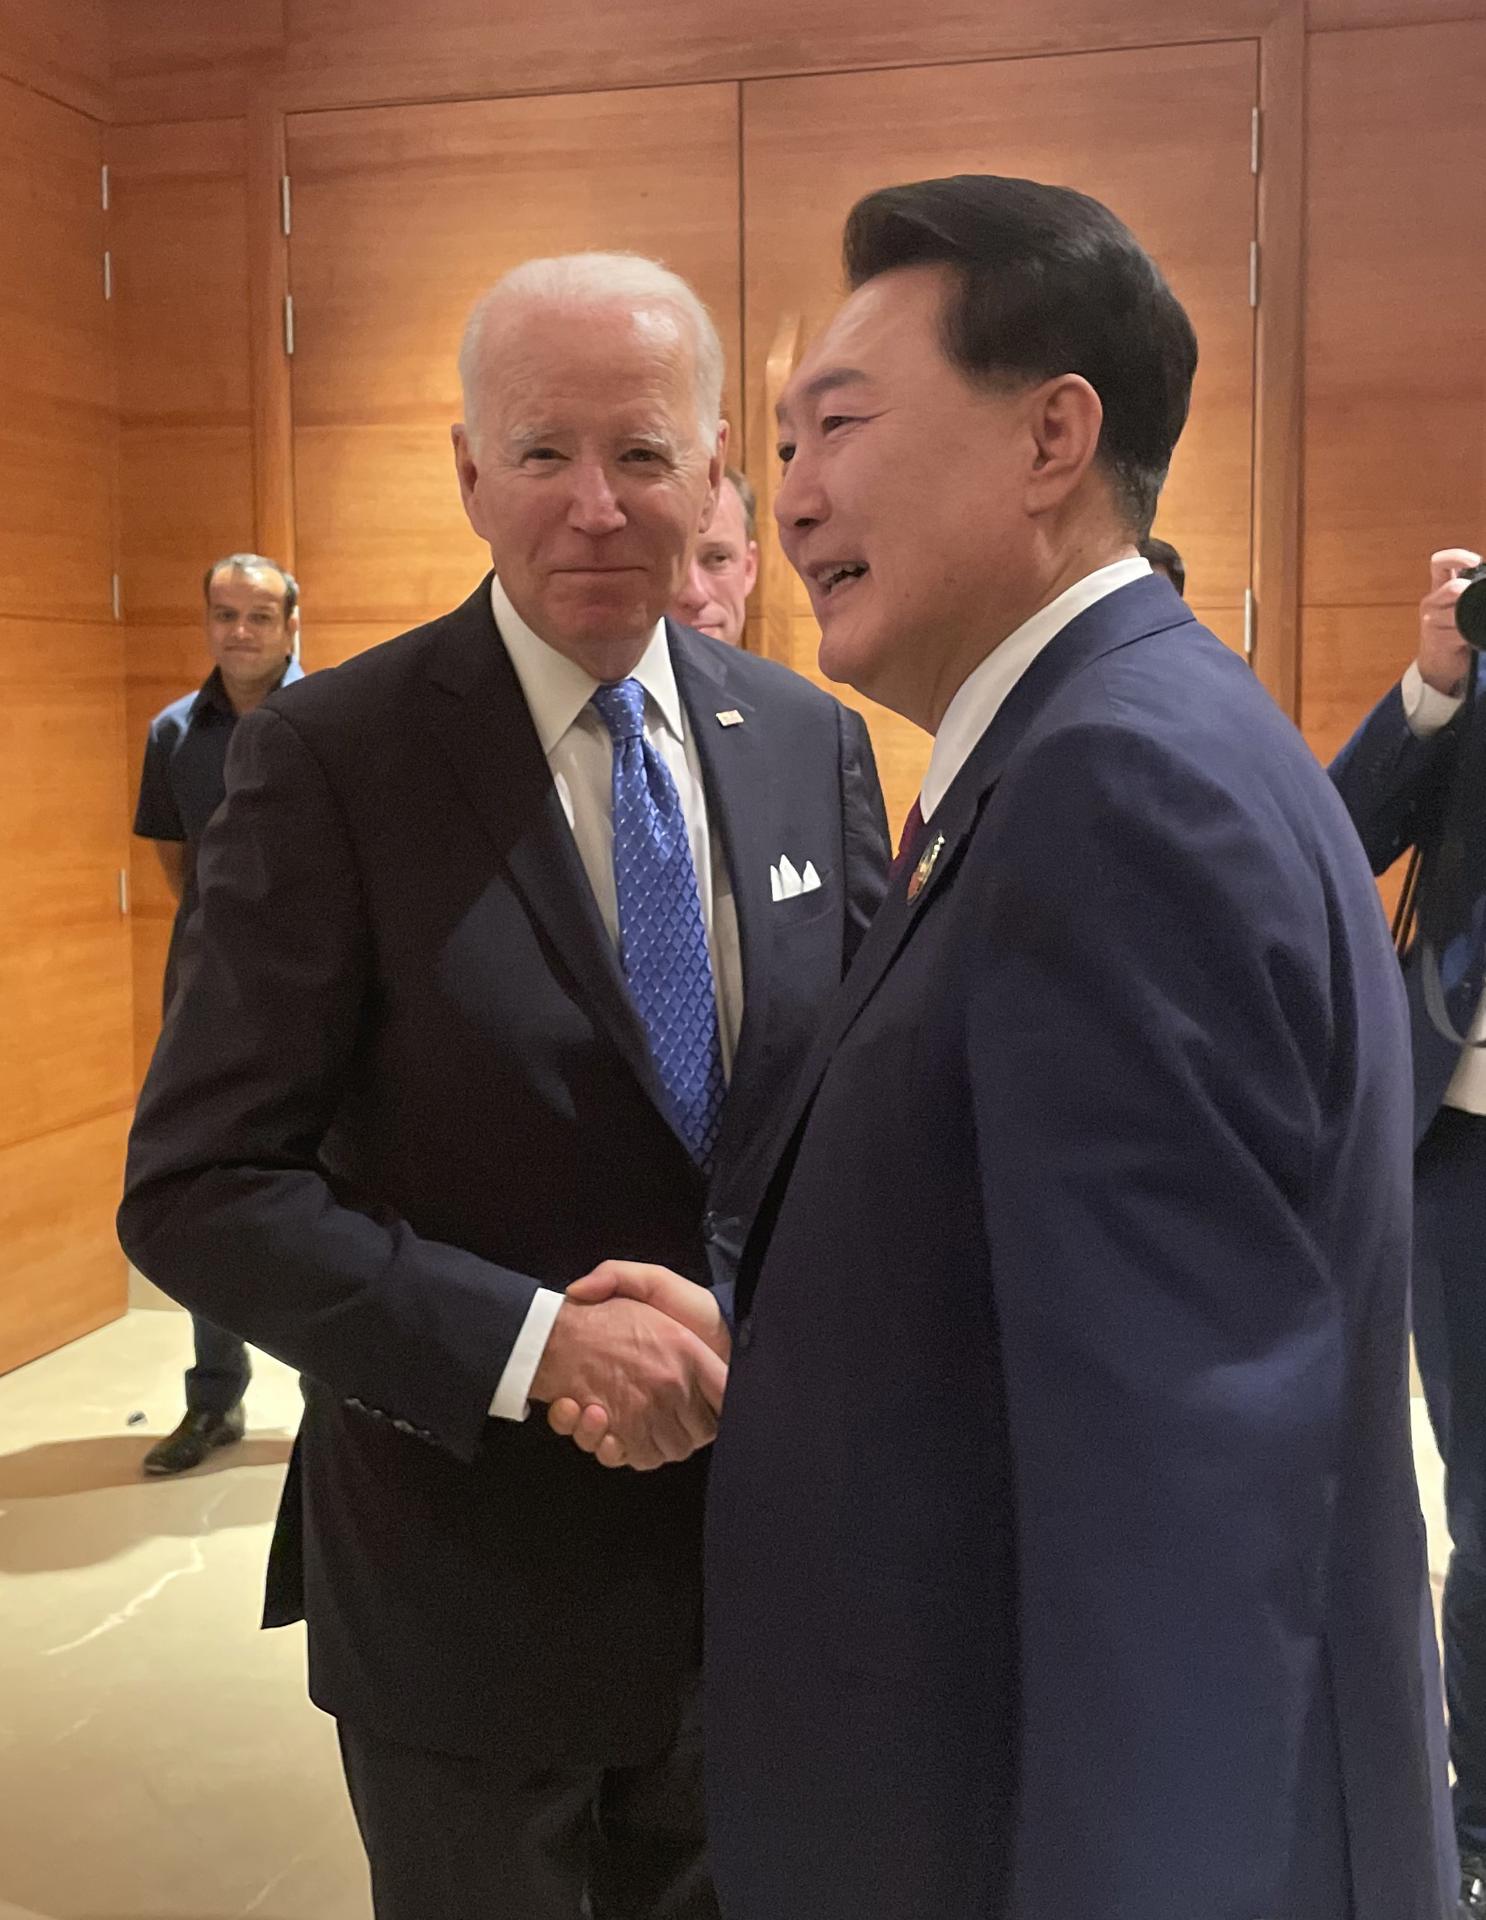 Biden busca fortalecer el perfil geopolítico del G20 a pesar de la ausencia de Xi